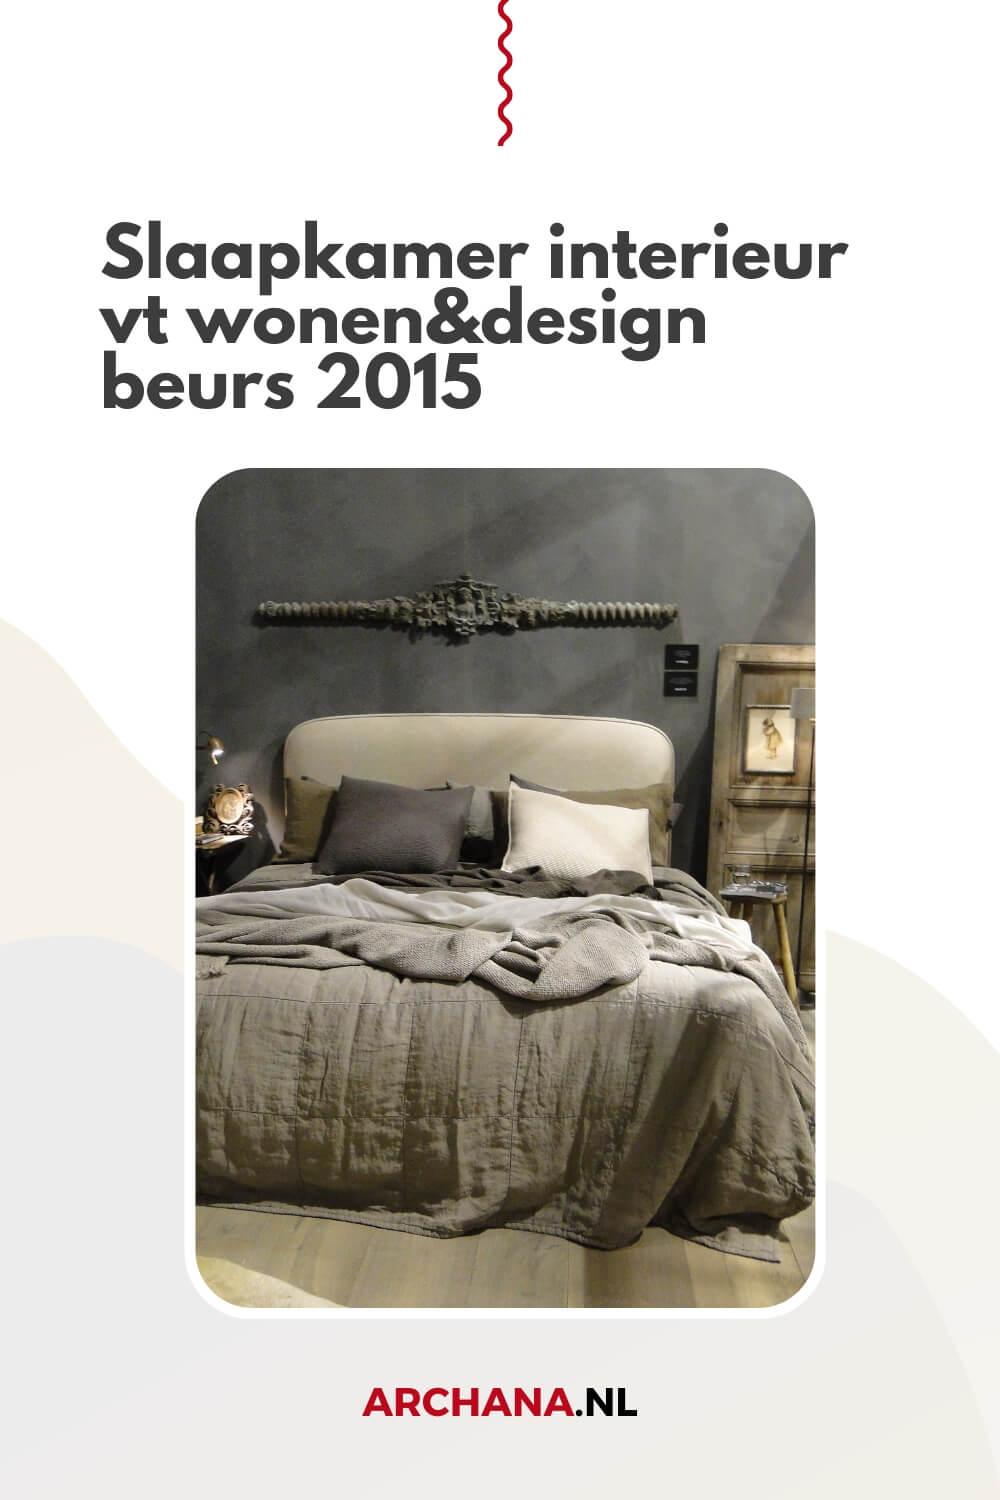 Slaapkamer interieur op vt wonen&design beurs 2015 - Inspiratie voor jouw droomhuis - ARCHANA.NL